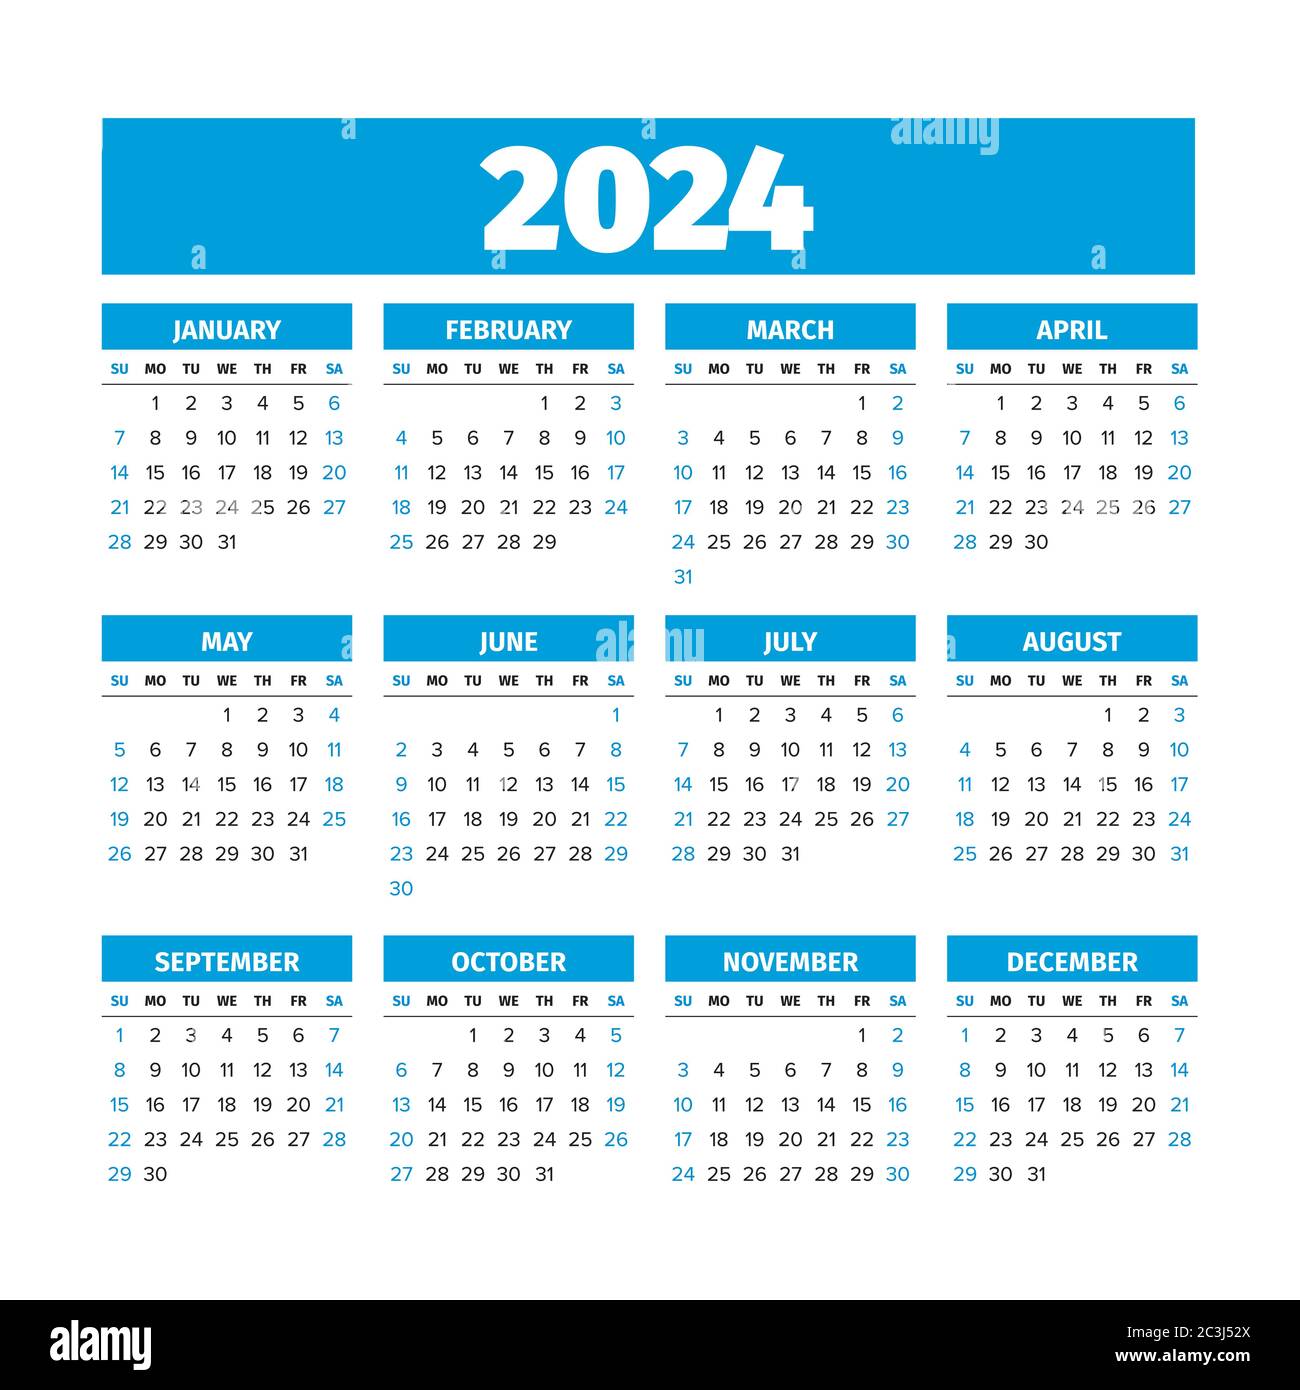 Calendario 2024 Con Semanas Numeradas Excel Image to u